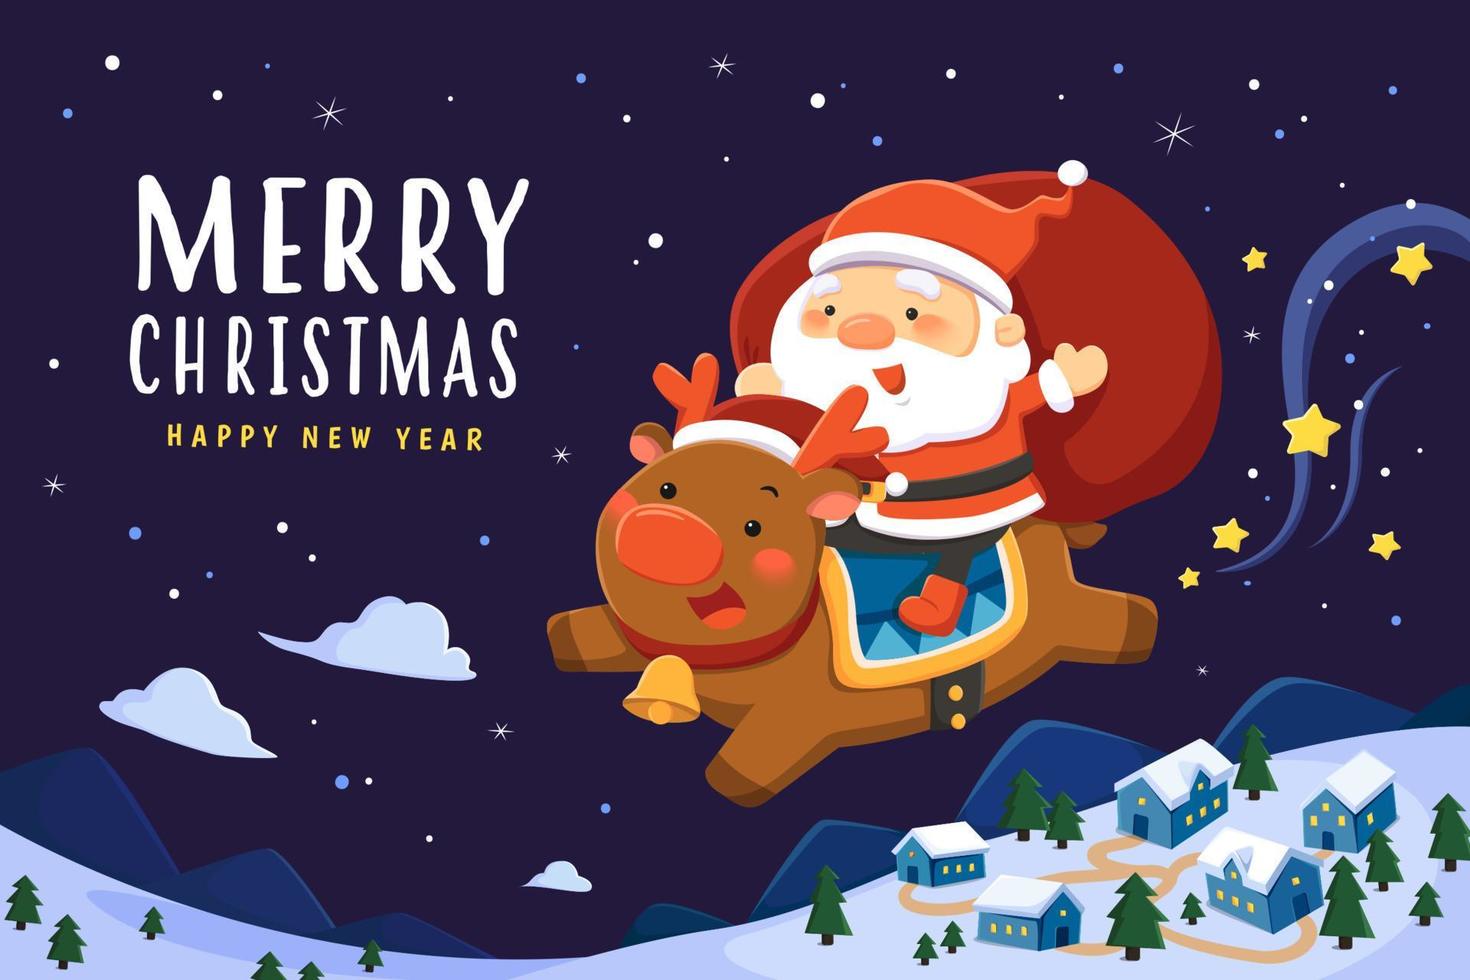 schöne Weihnachtsgrußkarte. flache illustration des weihnachtsmanns mit einem großen sack, der auf einem rentier reitet und durch den nachthimmel fliegt vektor